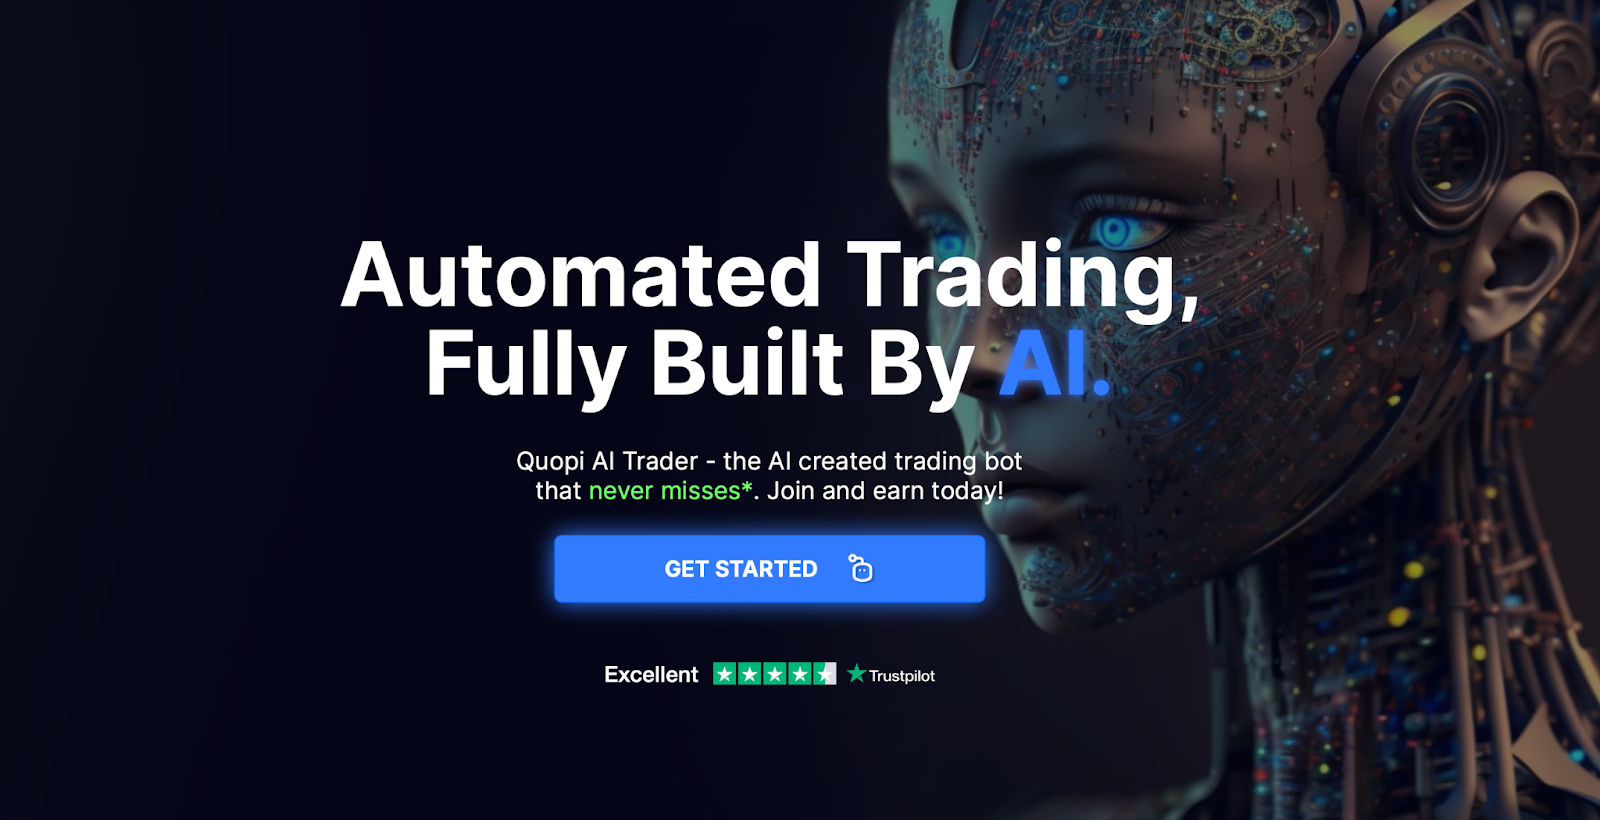 Quopi.AI bruger handelsanalyseværktøjer og avancerede algoritmer